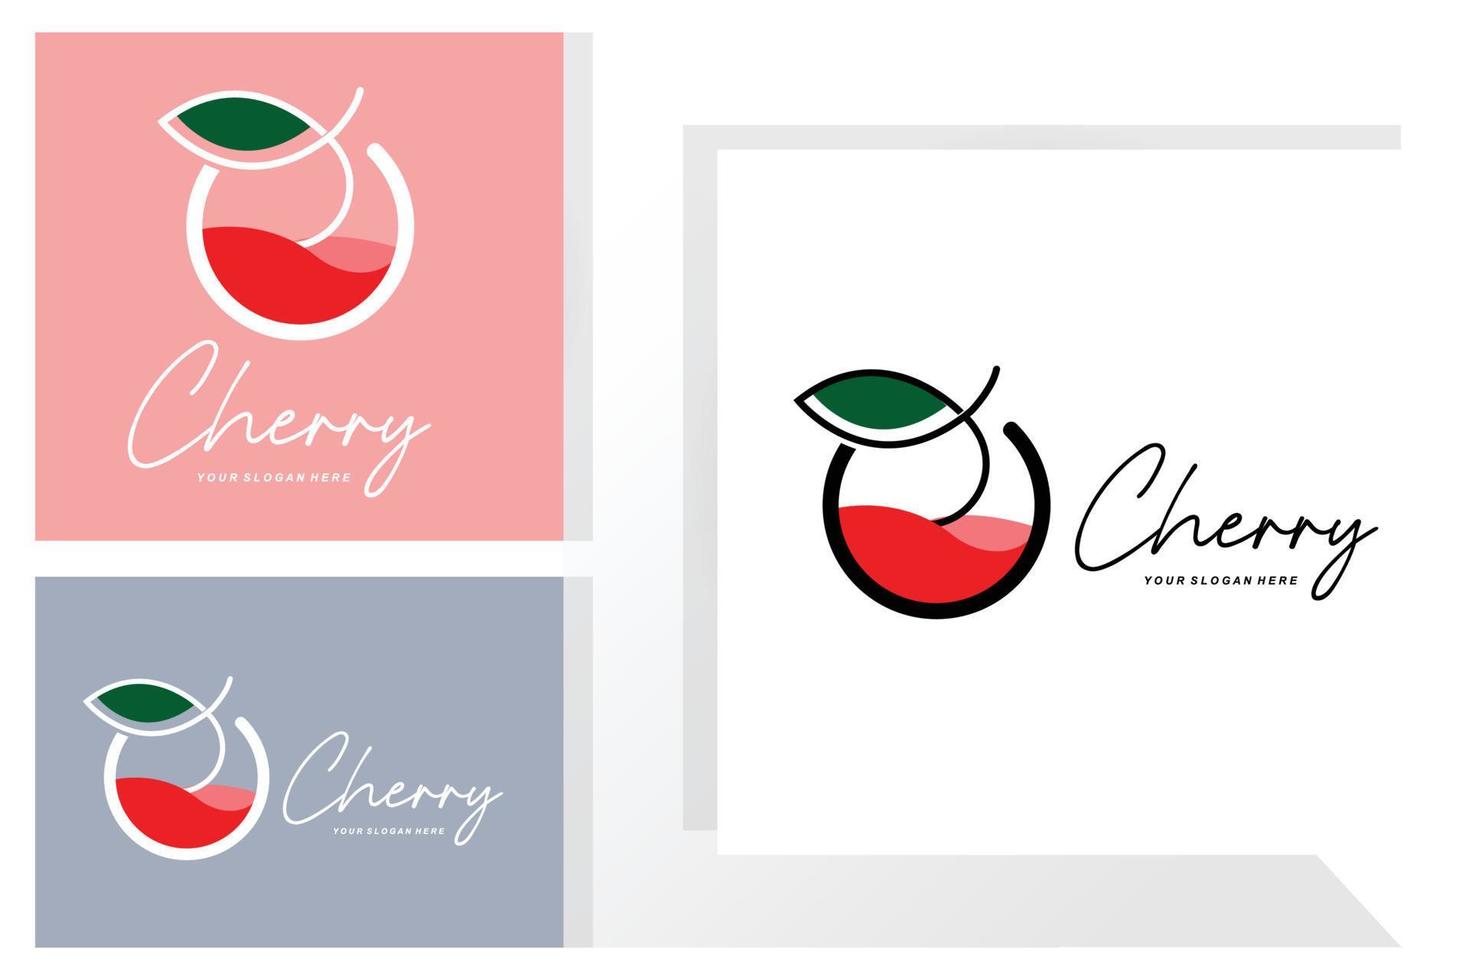 logotipo de fruta cereja, ilustração vetorial de planta de cor vermelha, design de loja de frutas, empresa, adesivo, marca de produto vetor